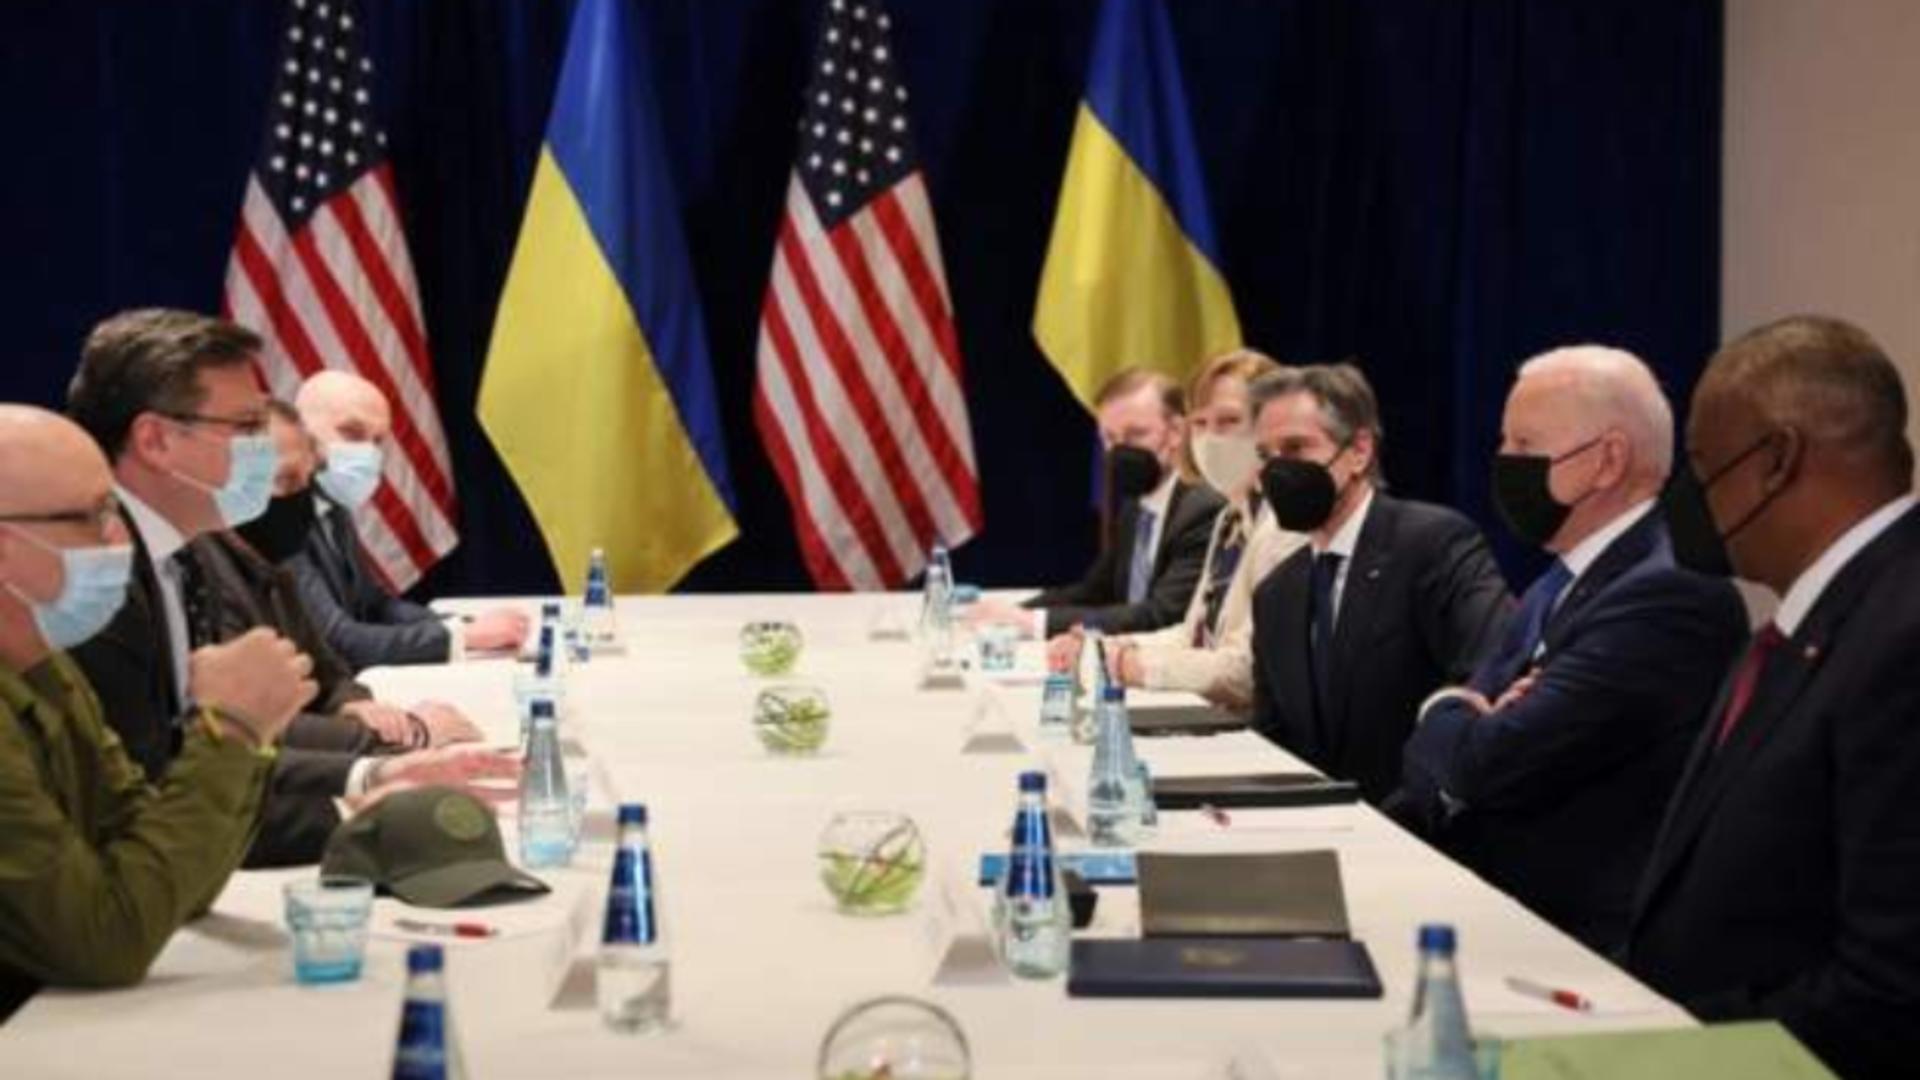 Joe Biden, întâlnire SURPRIZĂ cu doi miniștri ucraineni, în Polonia! Cel mai important mesaj la final de turneu